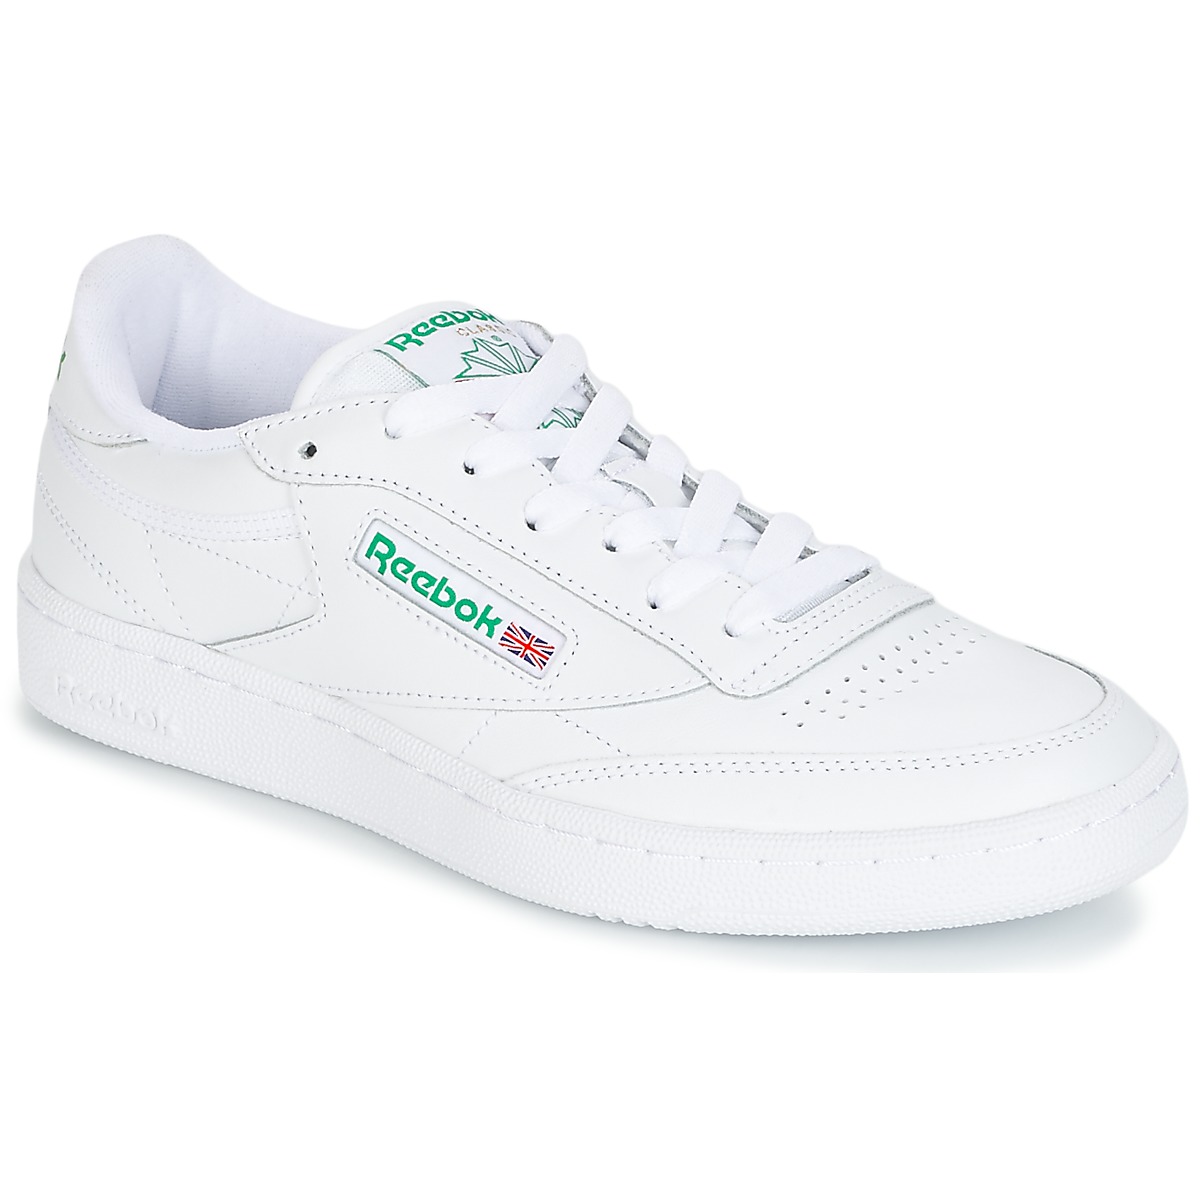 Reebok club c 85 schoenen - Intense White / Green - Dames